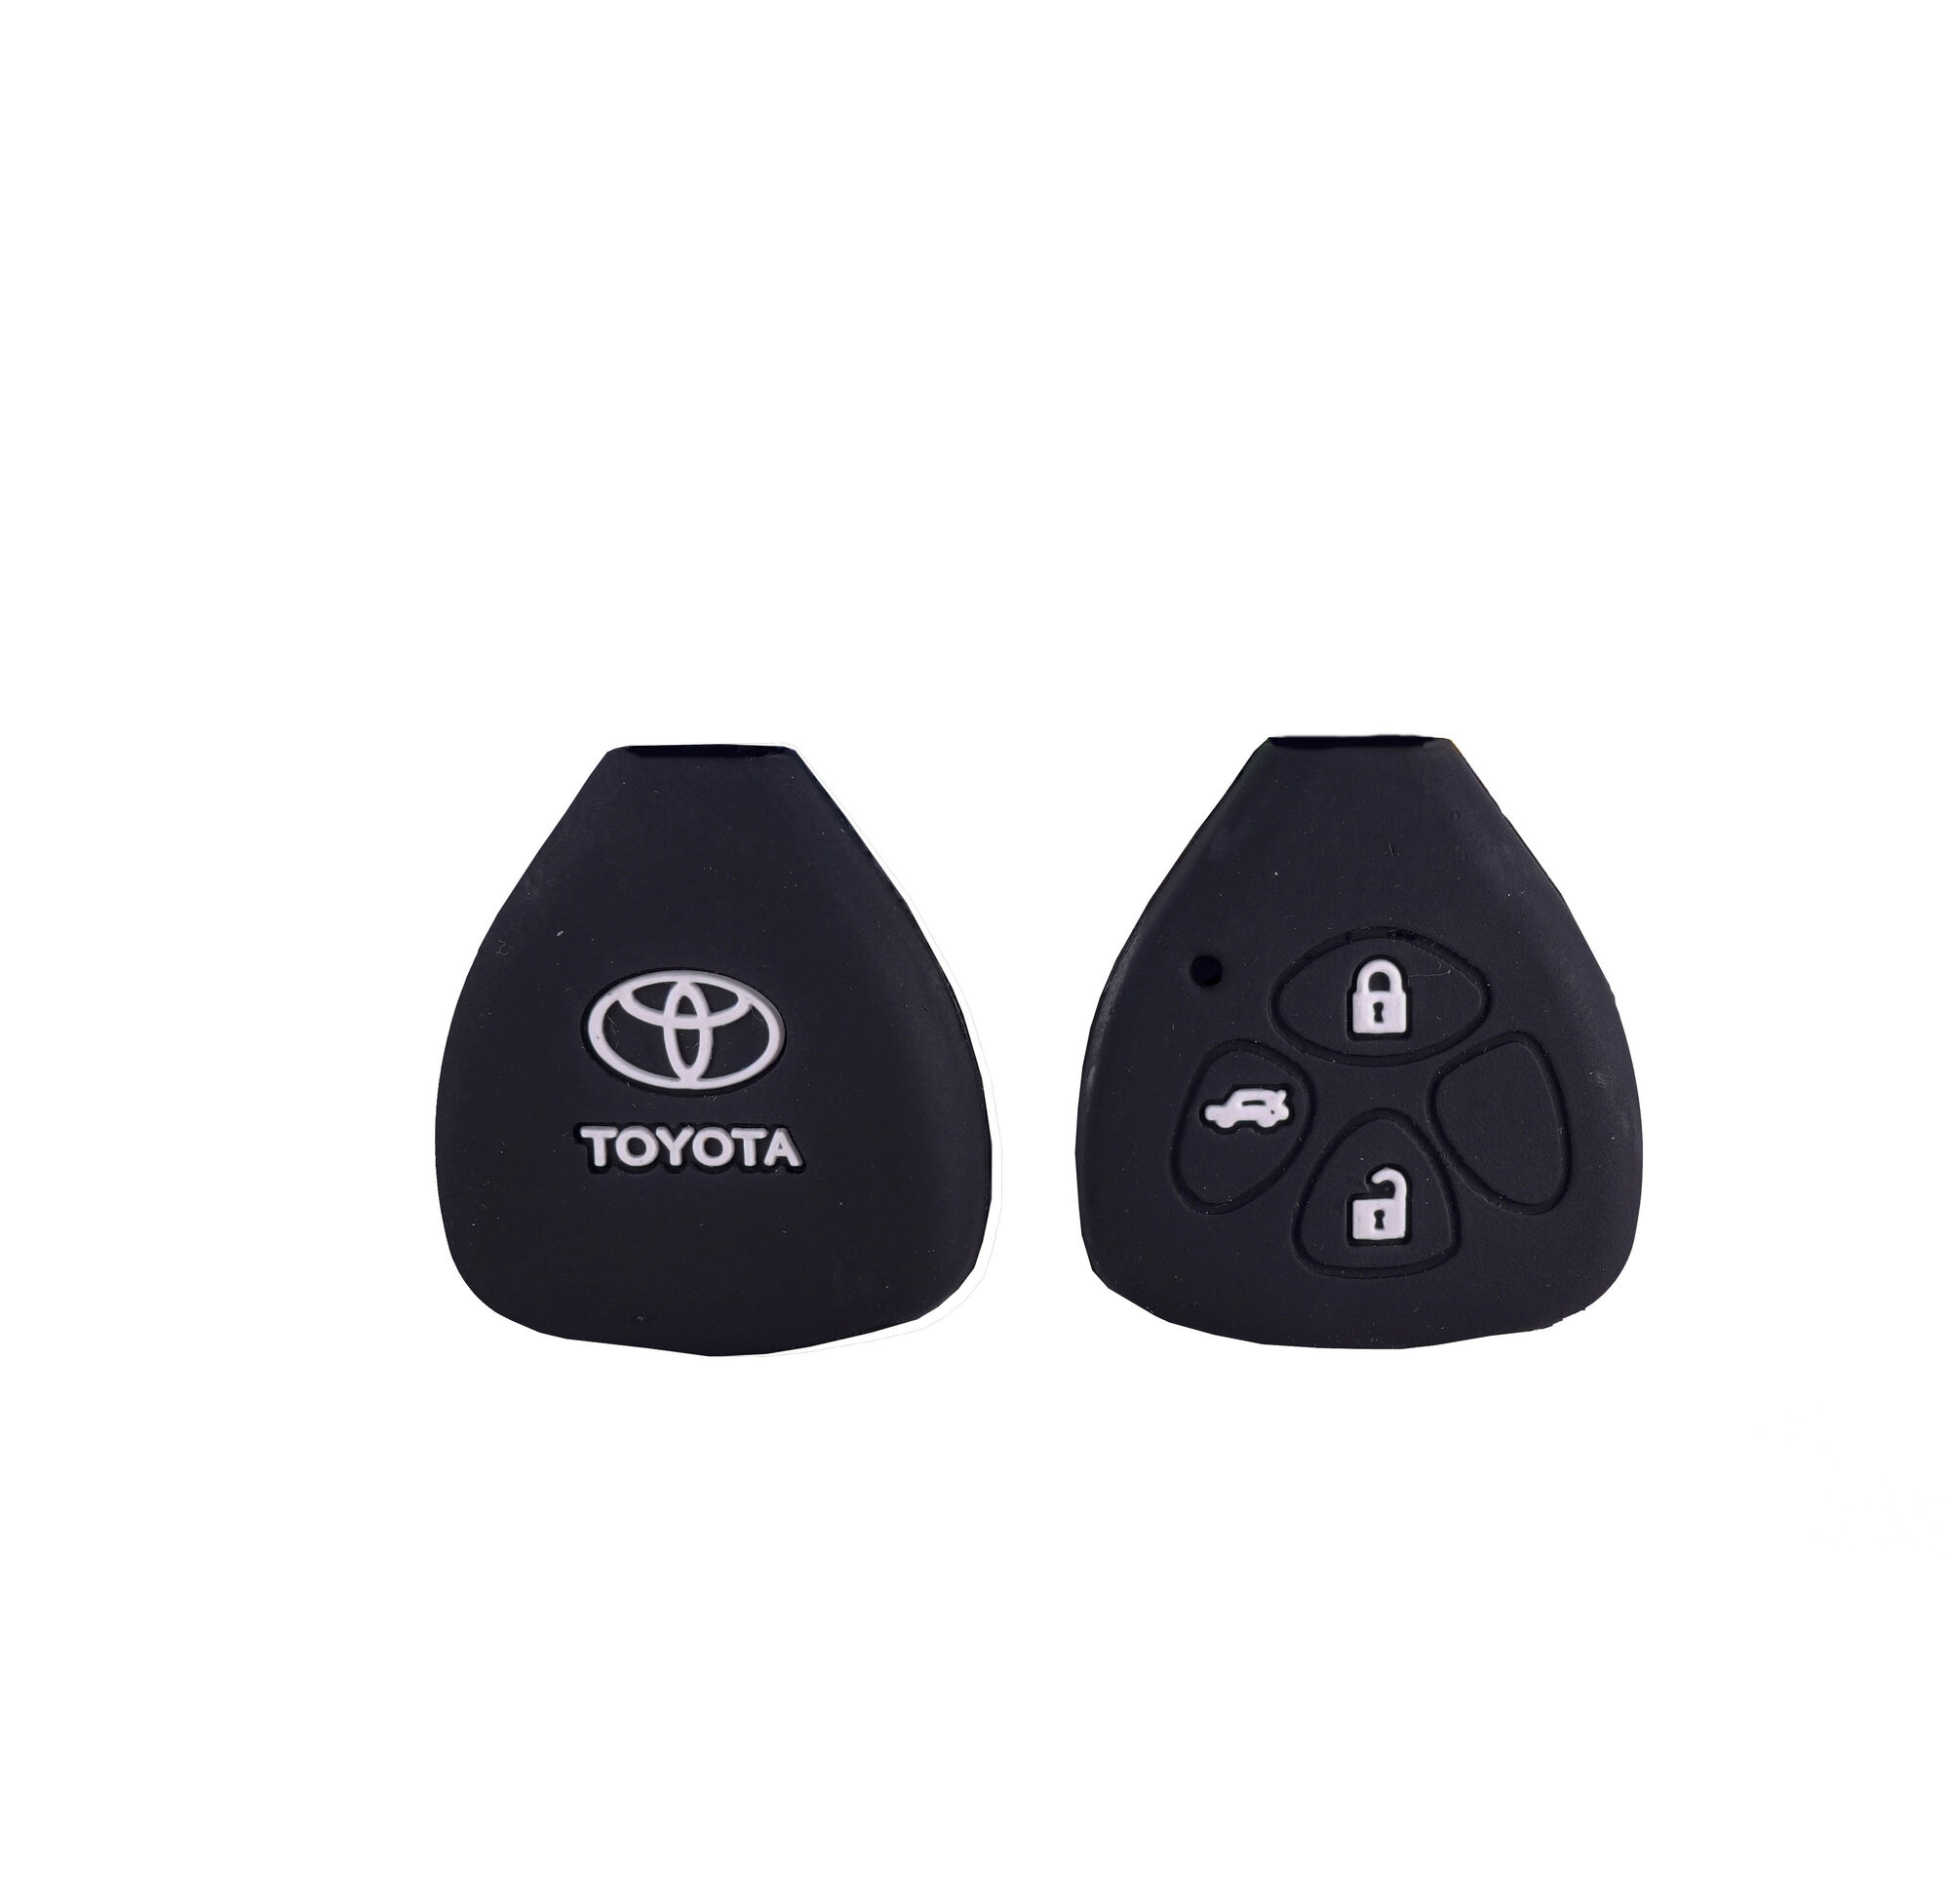 Чехол силиконовый к чип-ключу Toyota треугольный, 3 кнопки, чёрный